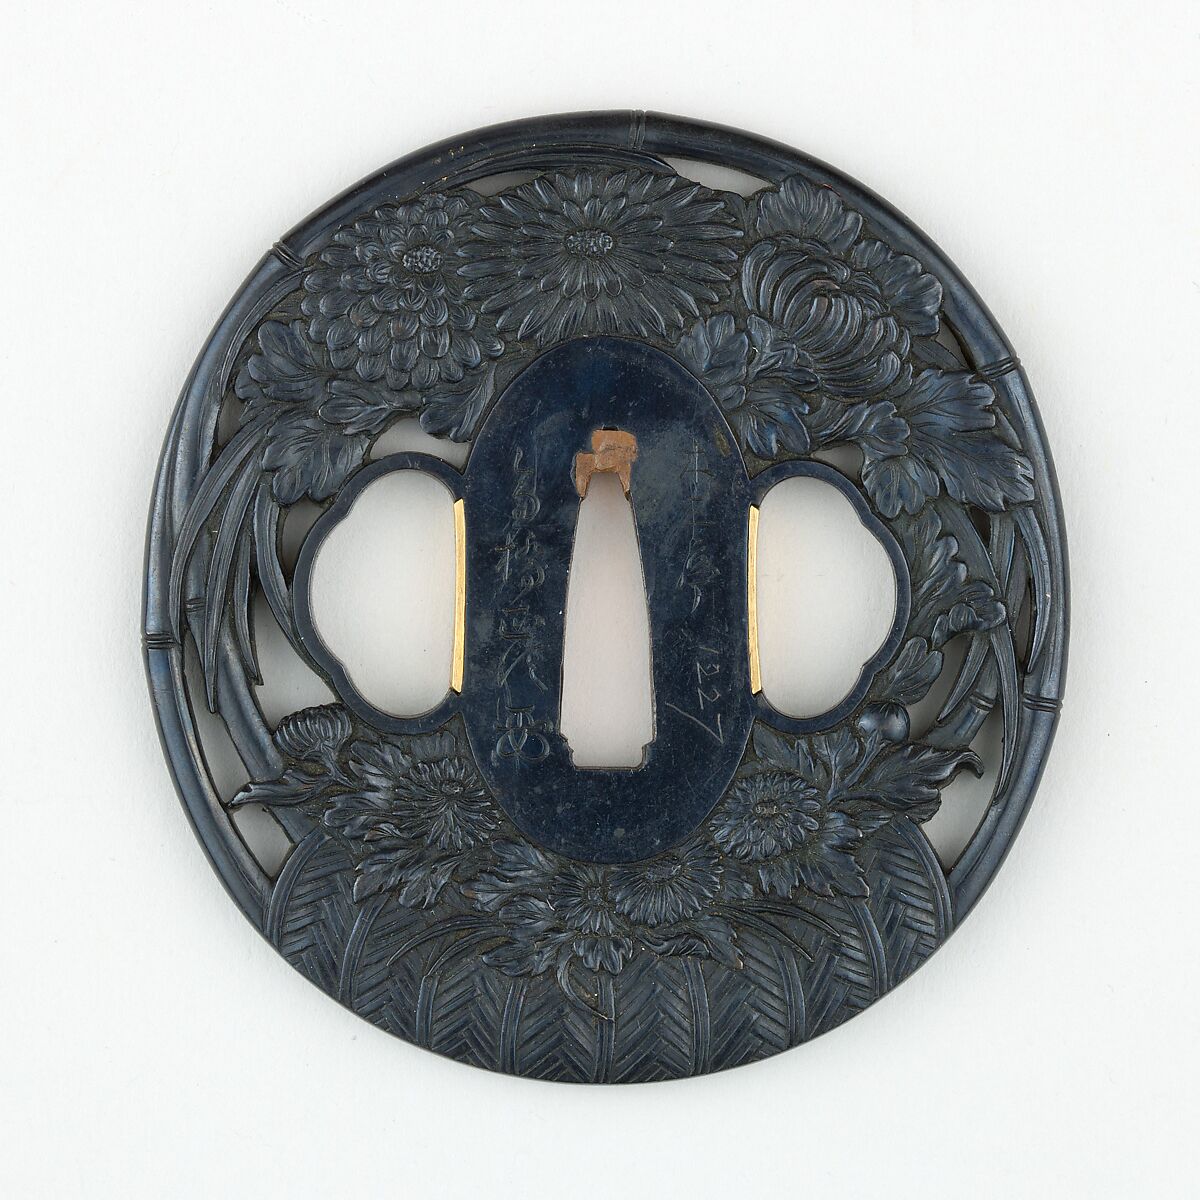 Sword guard (<i>Tsuba</i>) with Flower Basket Motif (花籠図鐔), Copper-gold alloy (shakudō), gold, Japanese 